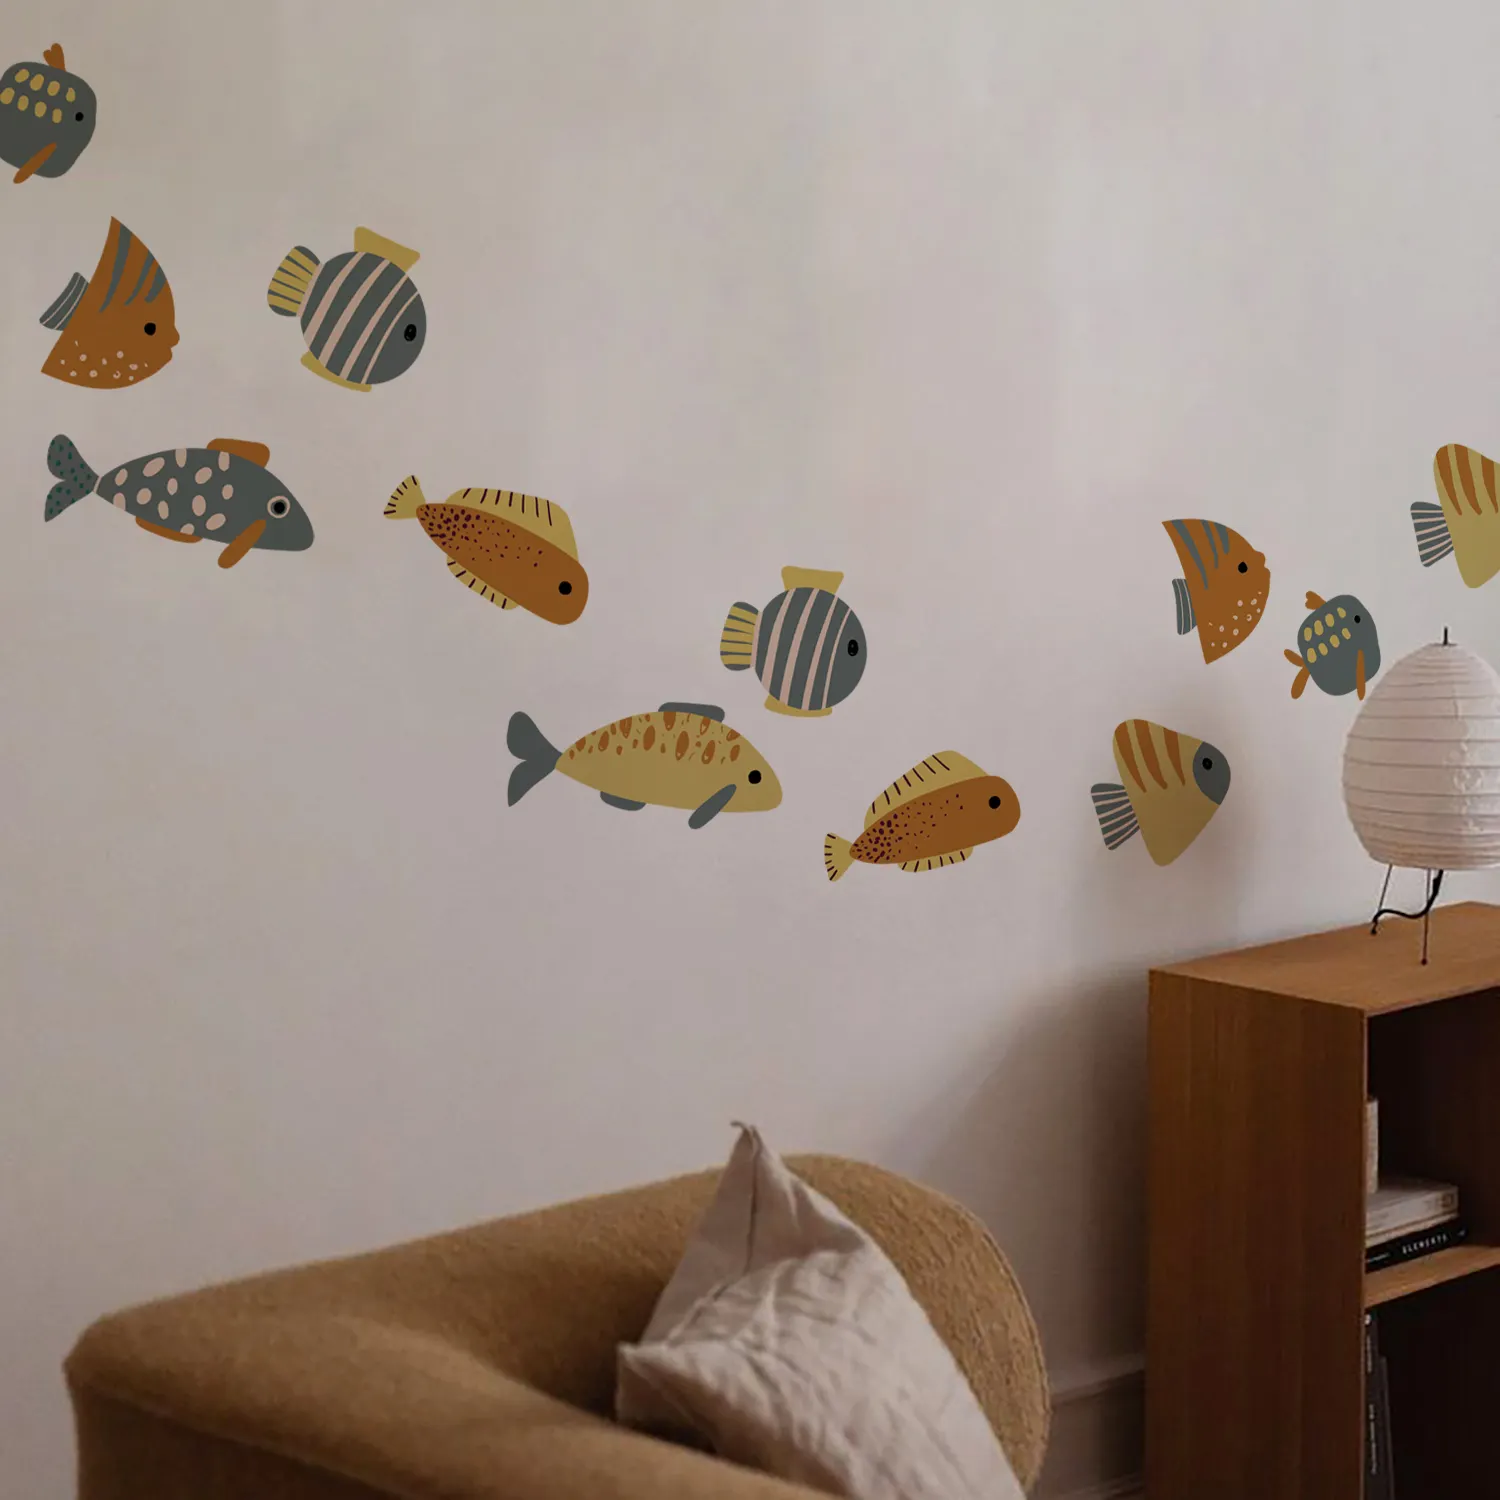 Funlife stiker dinding Modern abad pertengahan stiker dinding ikan laut stiker dinding anak-anak untuk dekorasi kamar anak